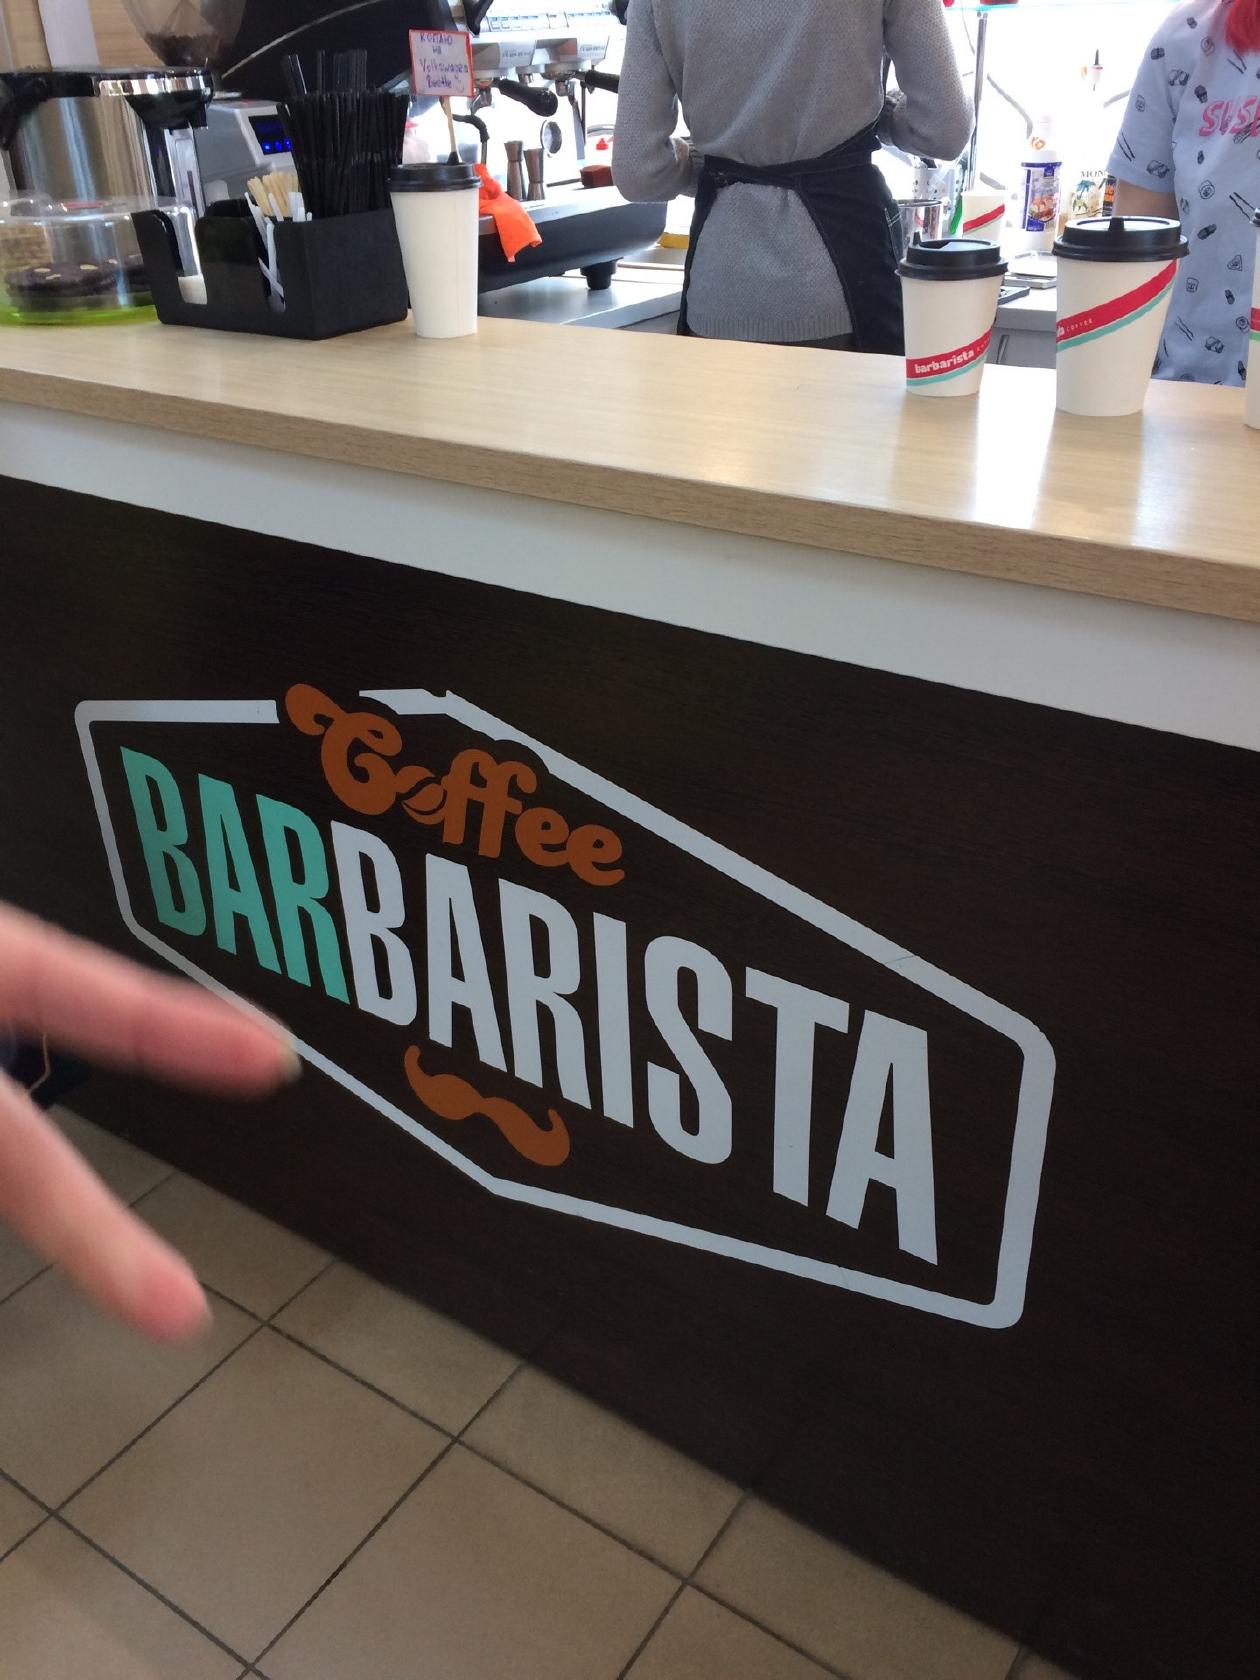 Barbarista Coffee